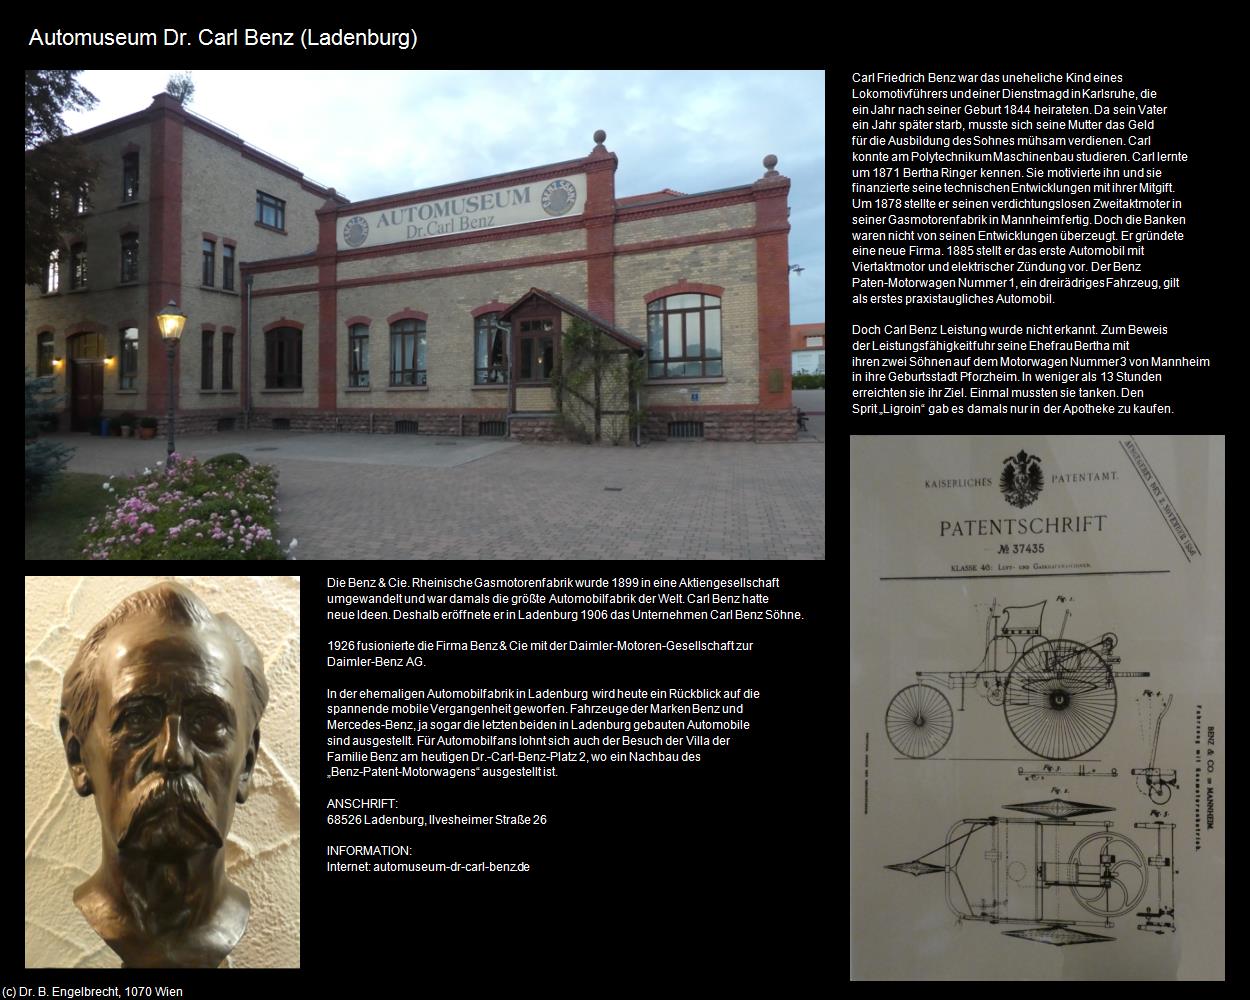 Automuseum Dr. Carl Benz (Ladenburg) in Kulturatlas-BADEN-WÜRTTEMBERG